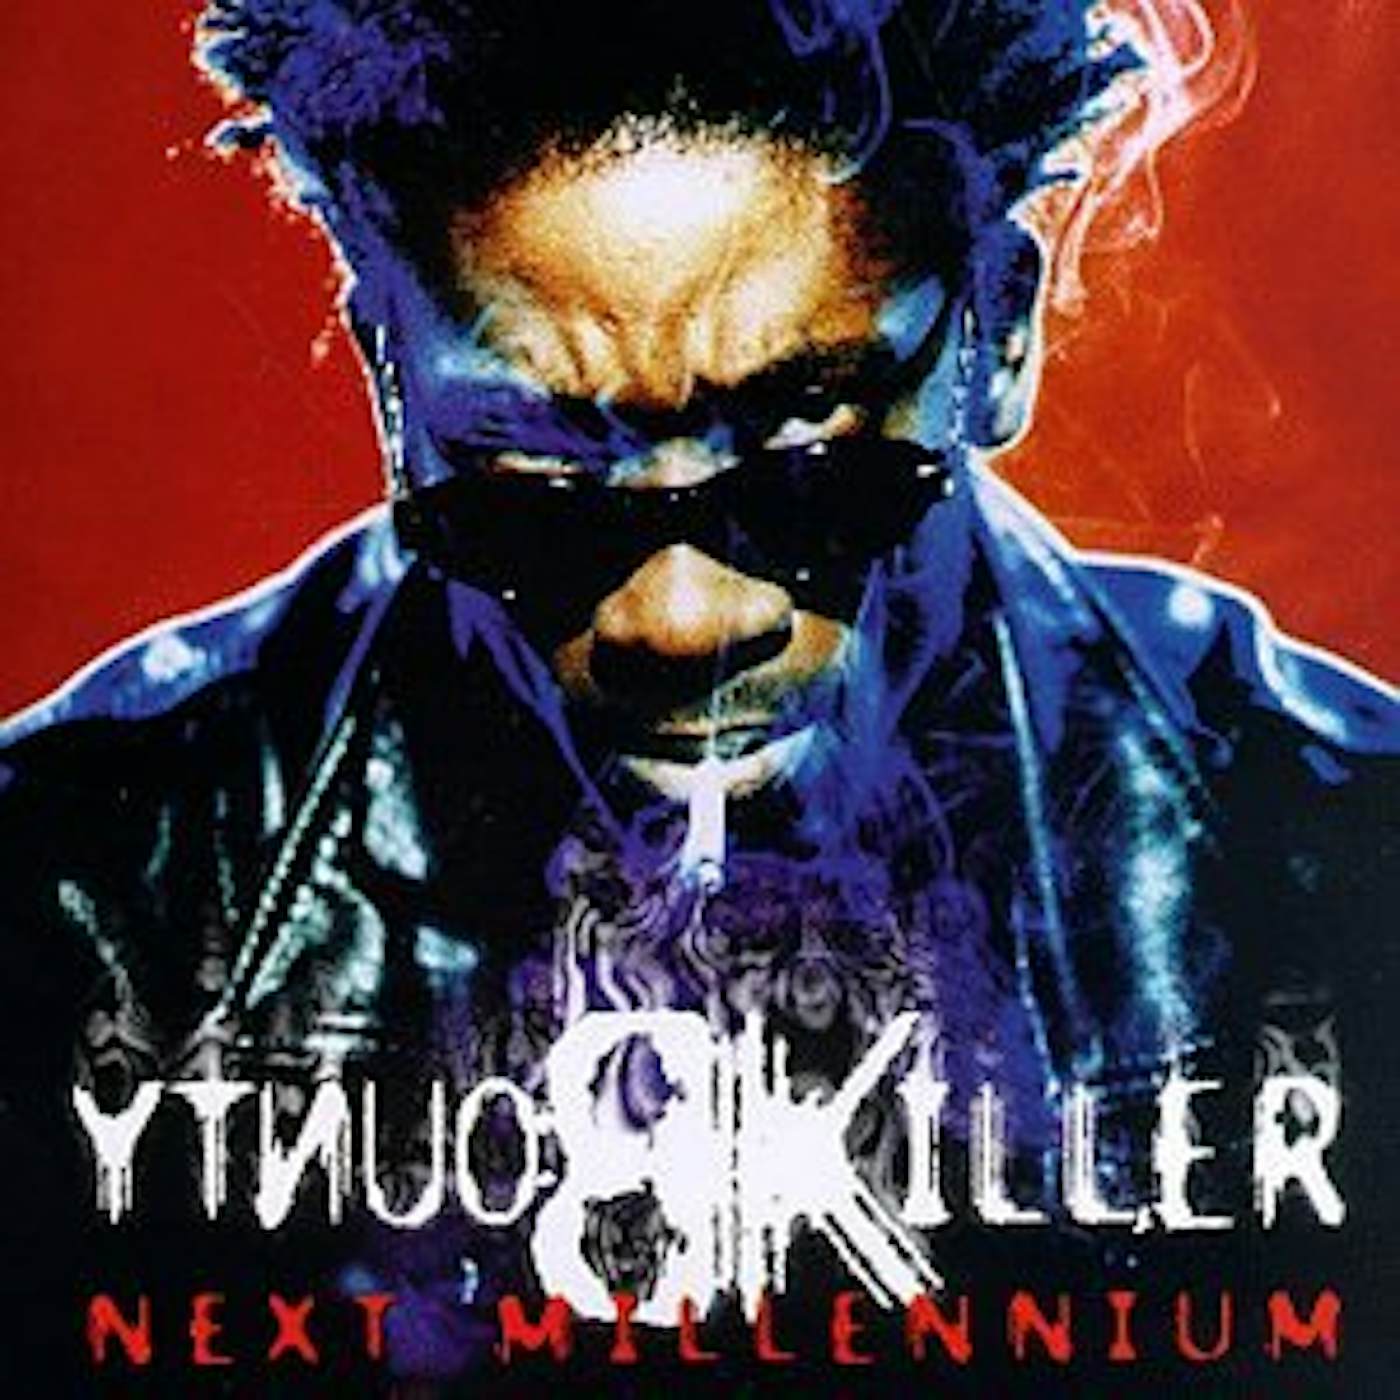 Bounty Killer Next Millennium Vinyl Record